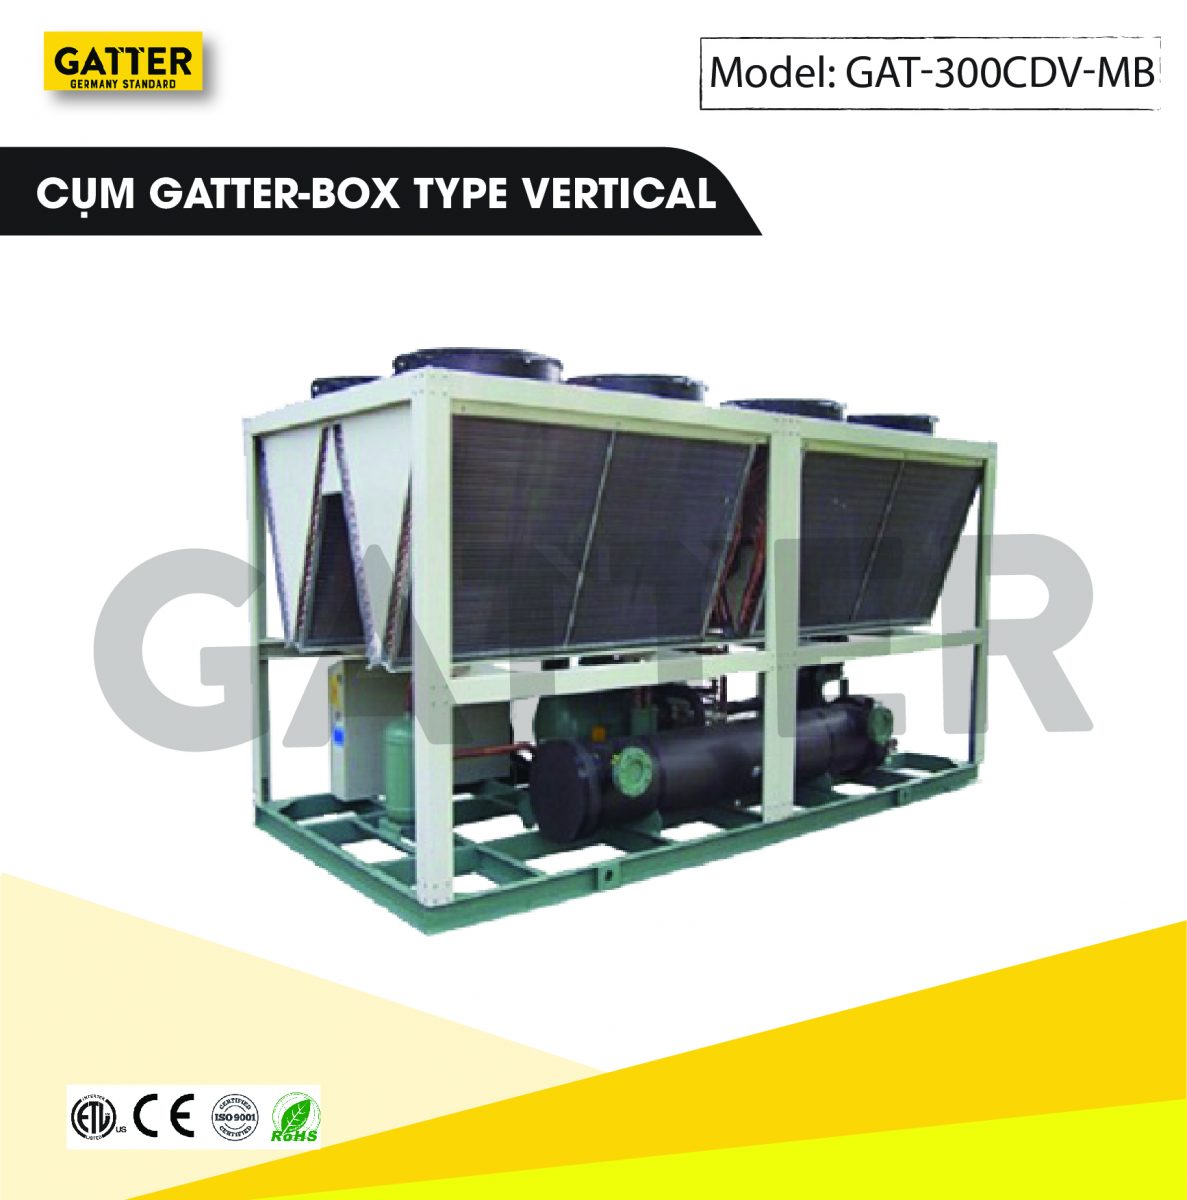 Cụm Gatter-box GAT-300CDV-MB